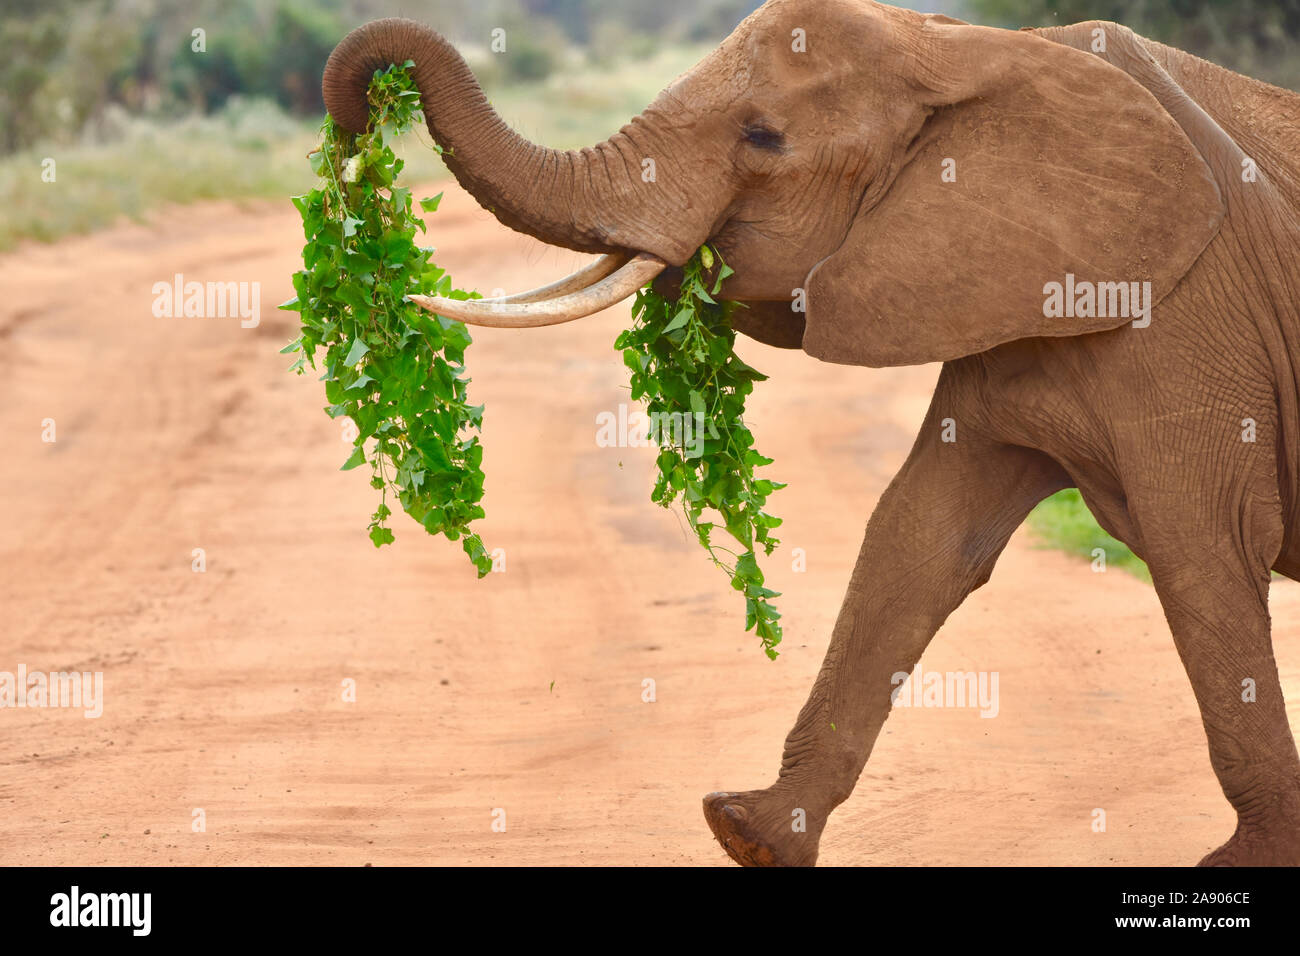 Alegre foto de elefantes caminando con lianas de su boca y extendió el tronco. ( Foto de stock